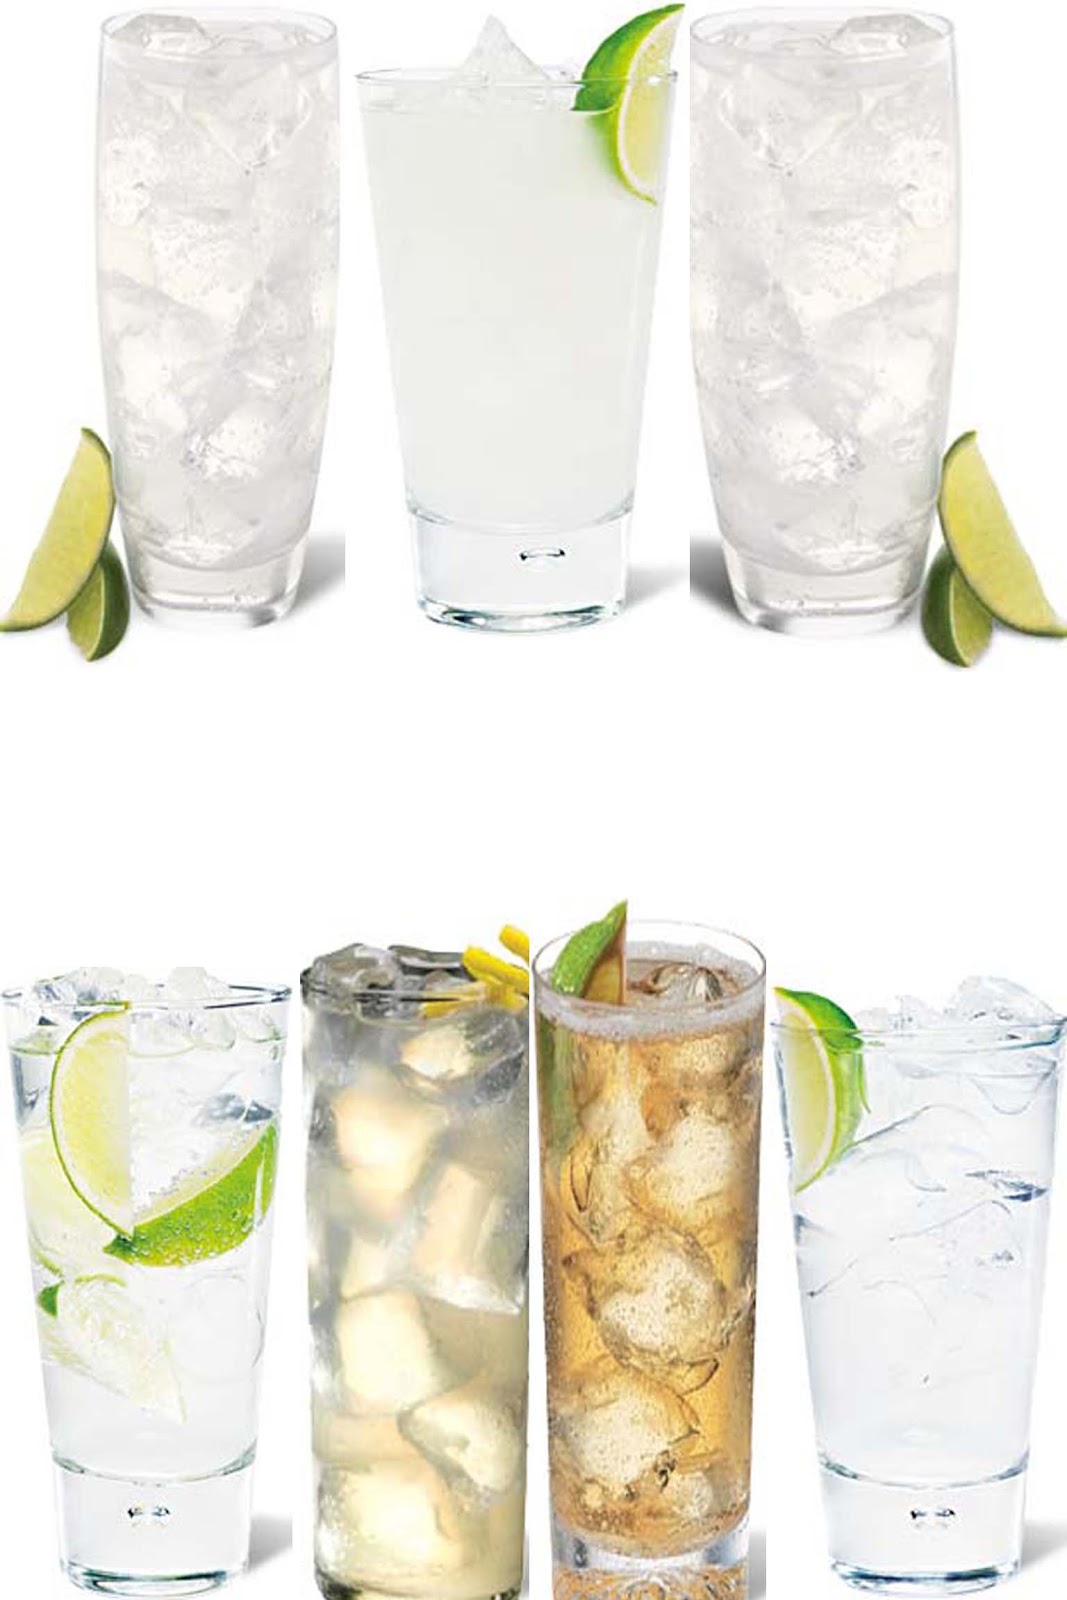 Cocktails con Tequila: 7 Formas Diferentes de Preparar el Cóctel Paloma